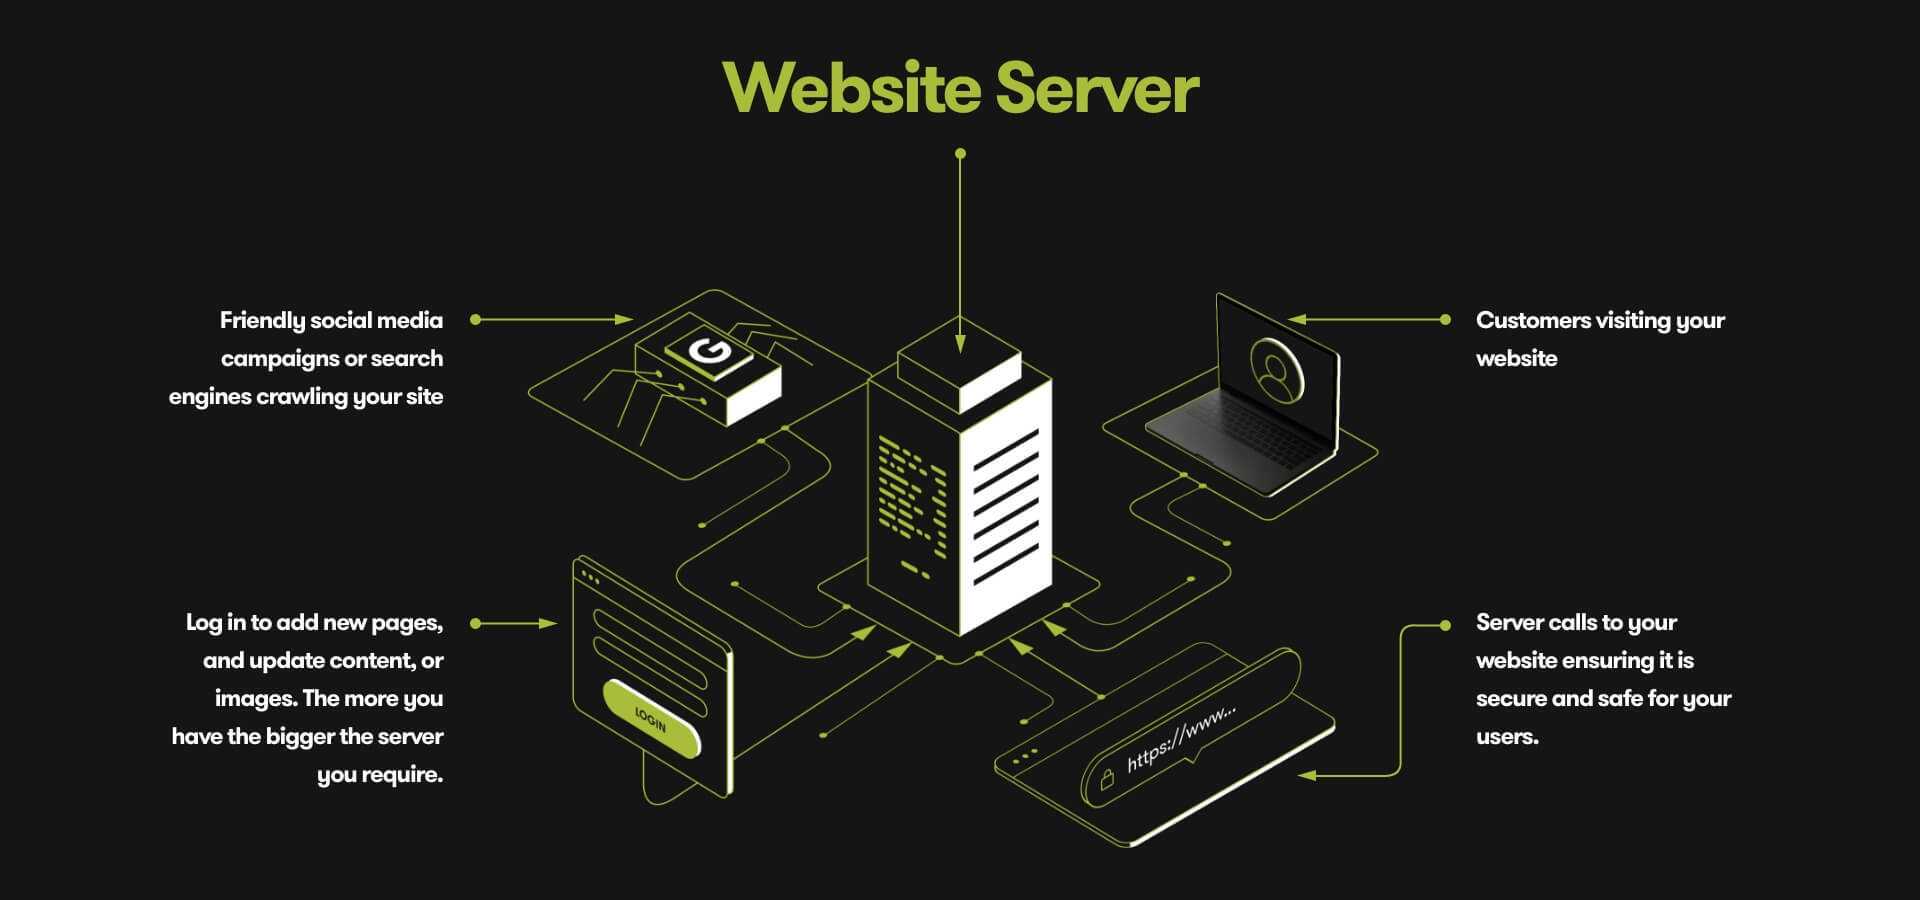 Website server section